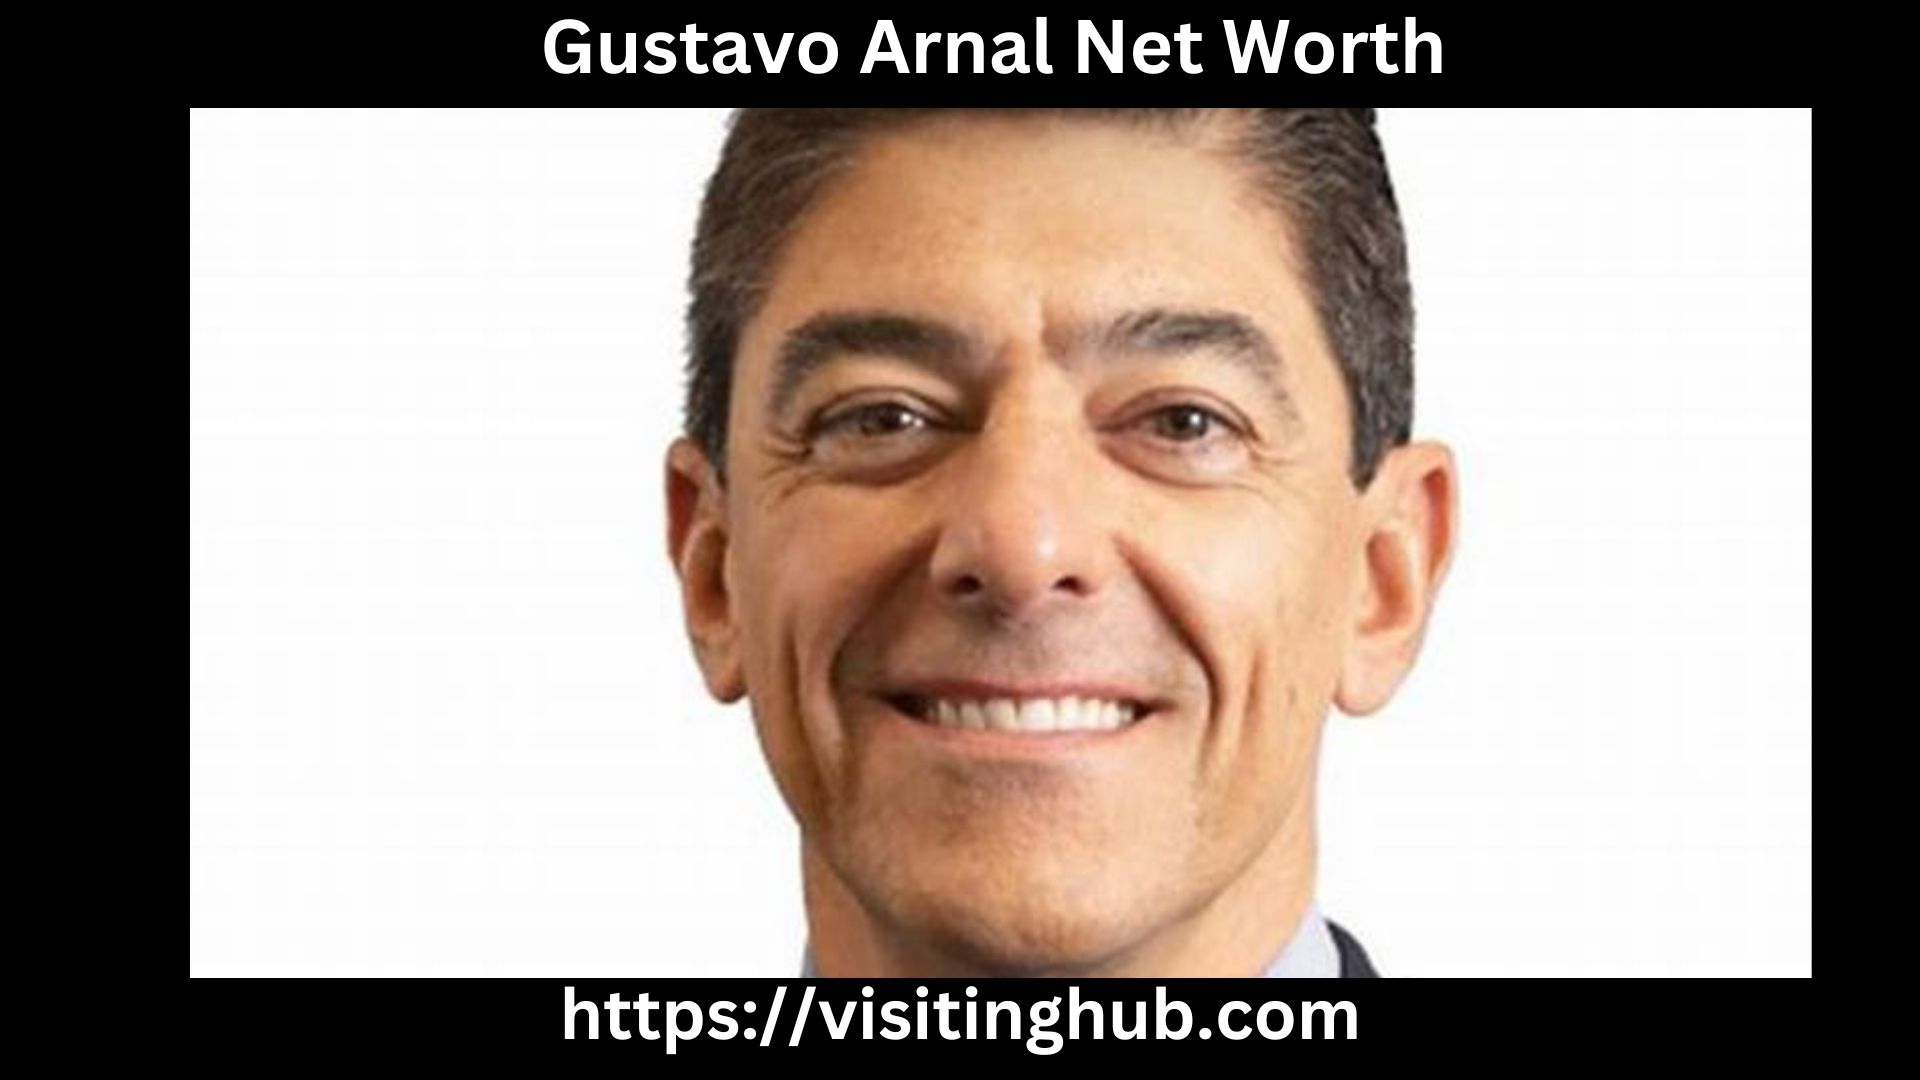 Gustavo Arnal Net Worth